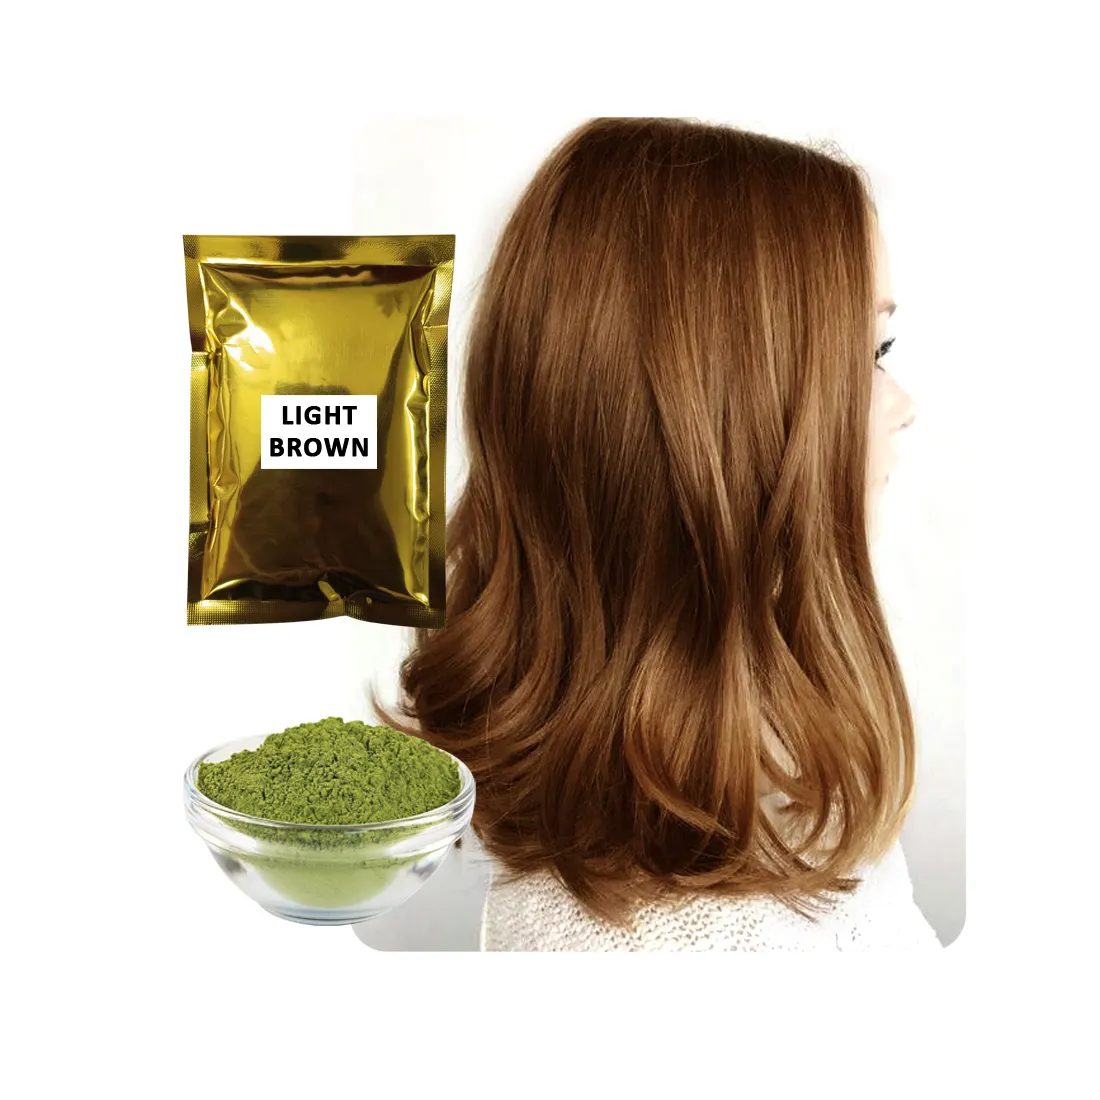 Prodotto di alta qualità colore dei capelli all'henné marrone chiaro a base di erbe al produttore e all'esportazione indiani